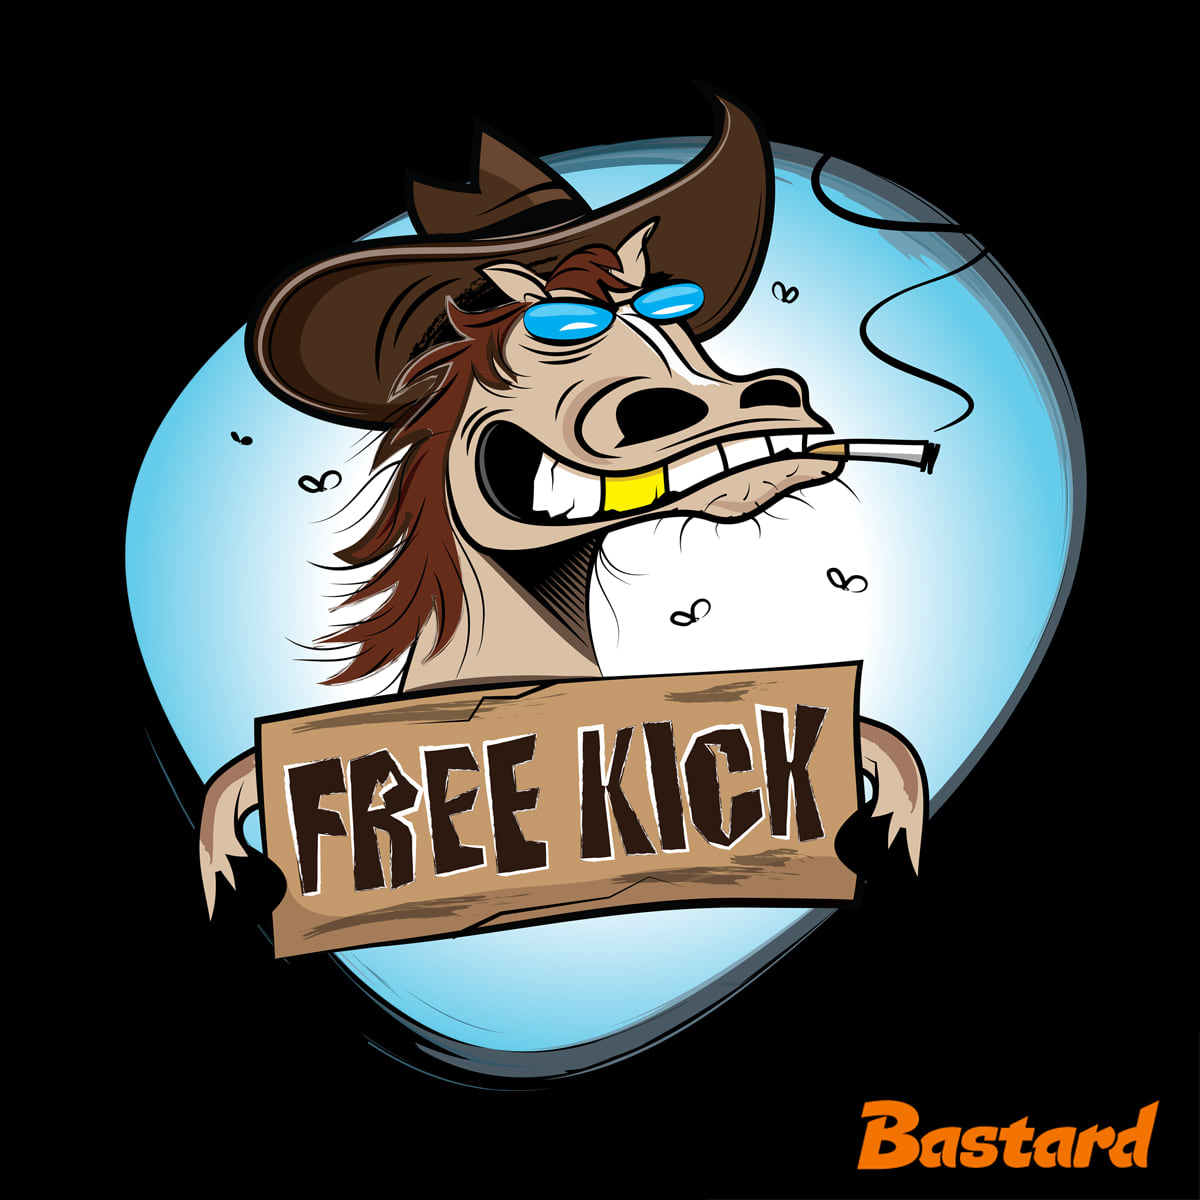 Free kick